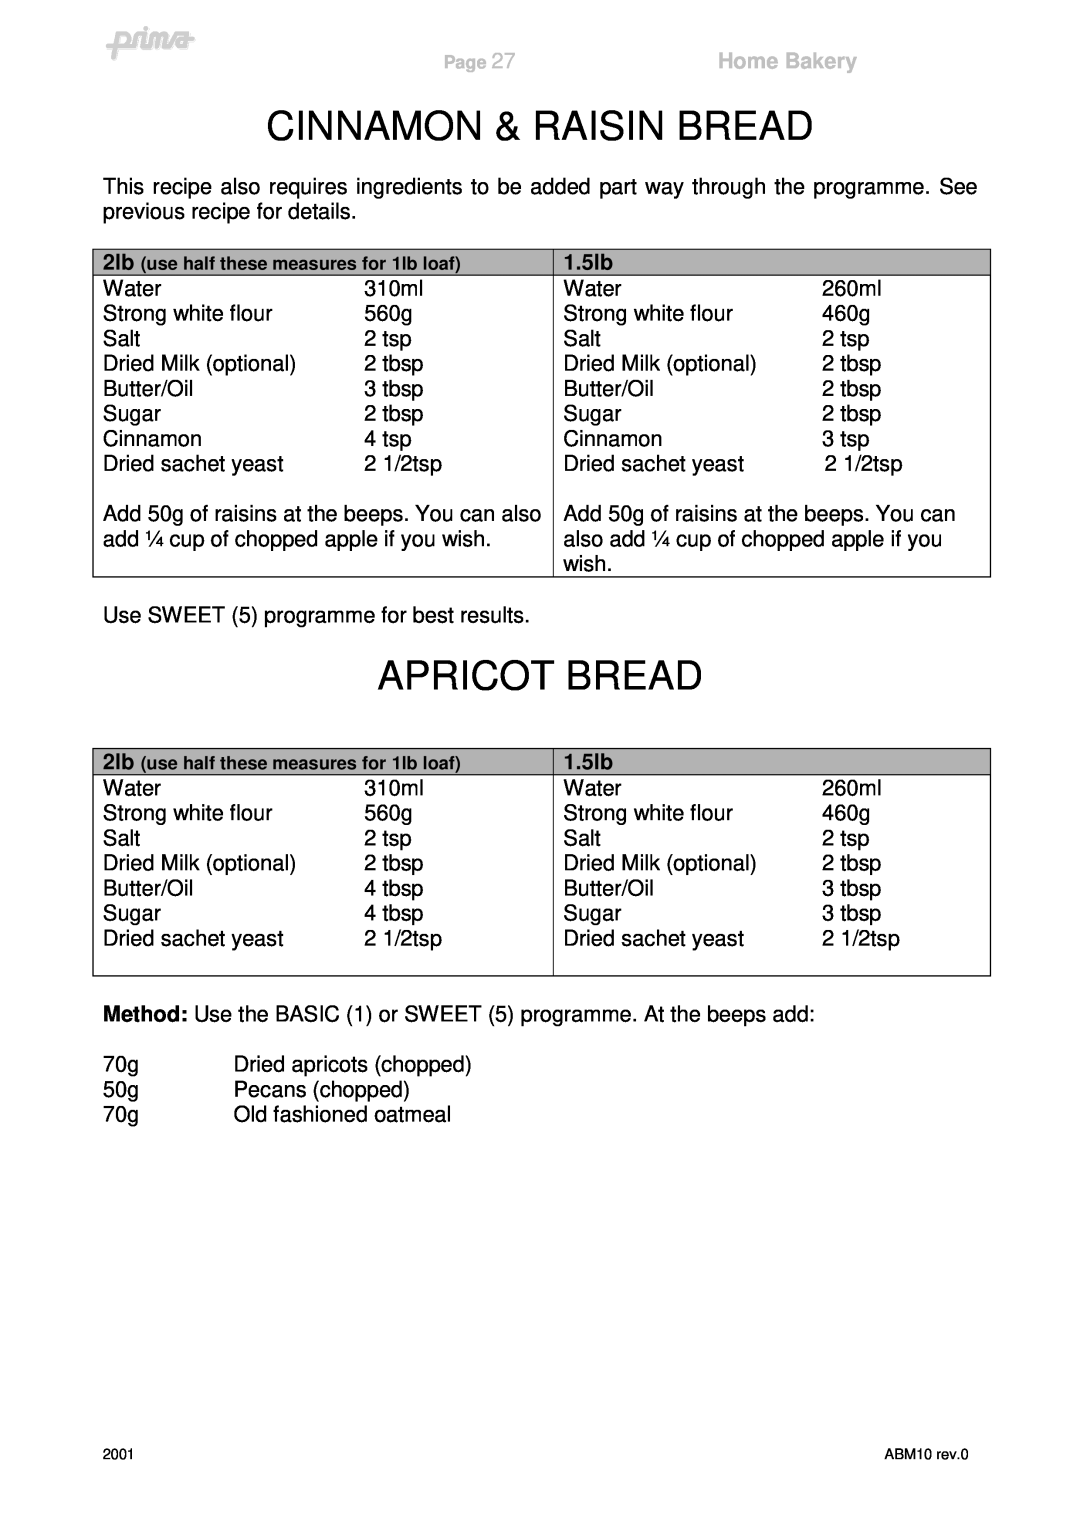 Prima ABM10 instruction manual Cinnamon & Raisin Bread, Apricot Bread, Home Bakery, 1.5lb 